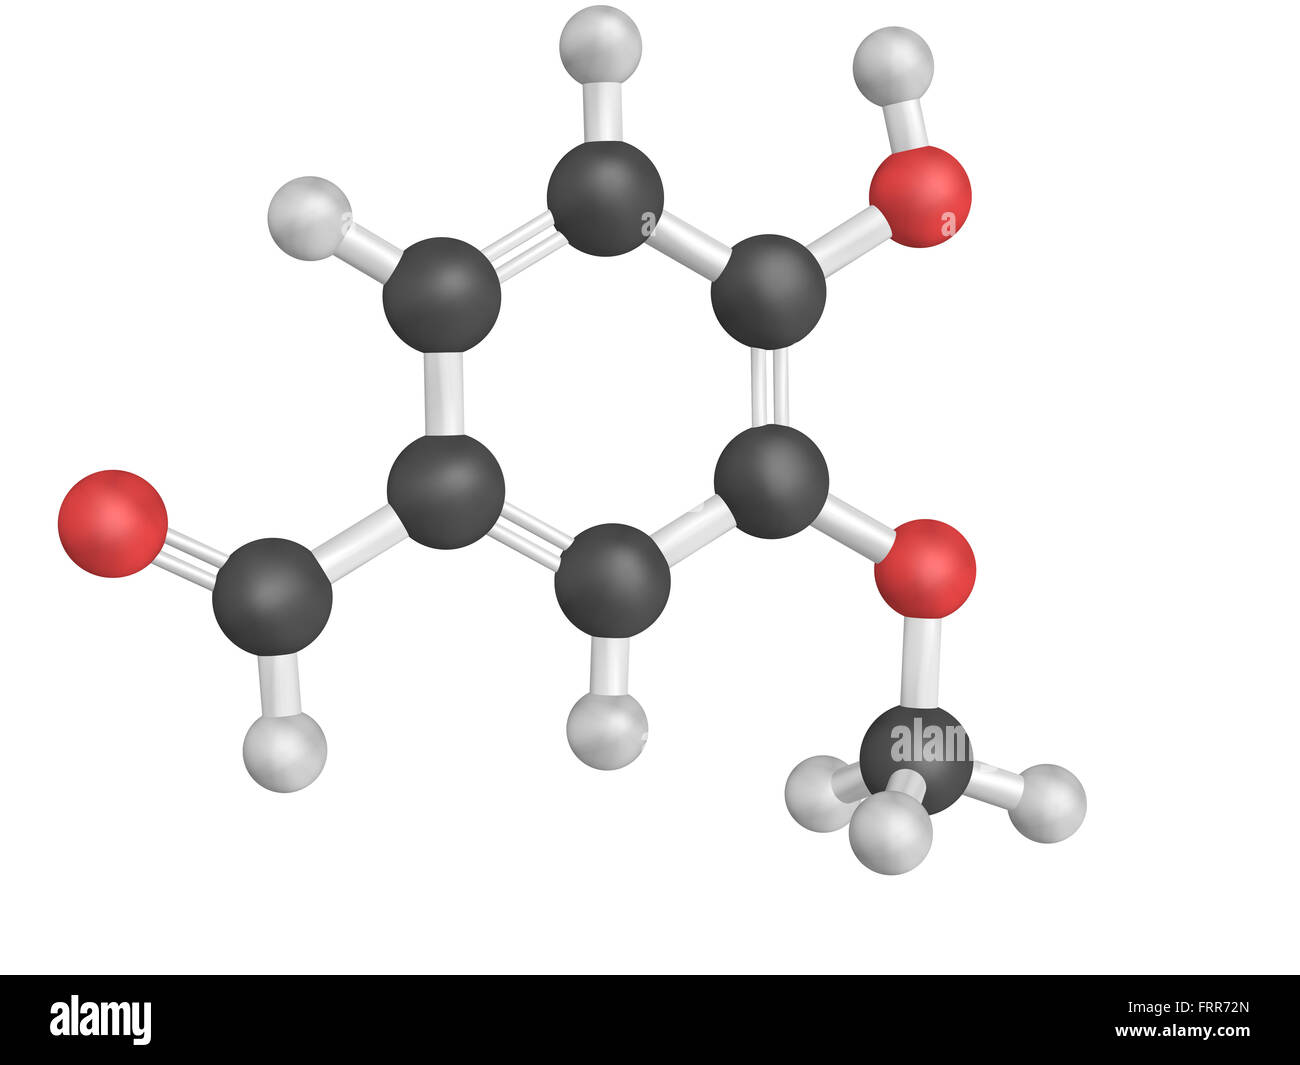 Structure chimique de la vanilline. La vanilline est la principale composante de l'extrait de vanille. Banque D'Images